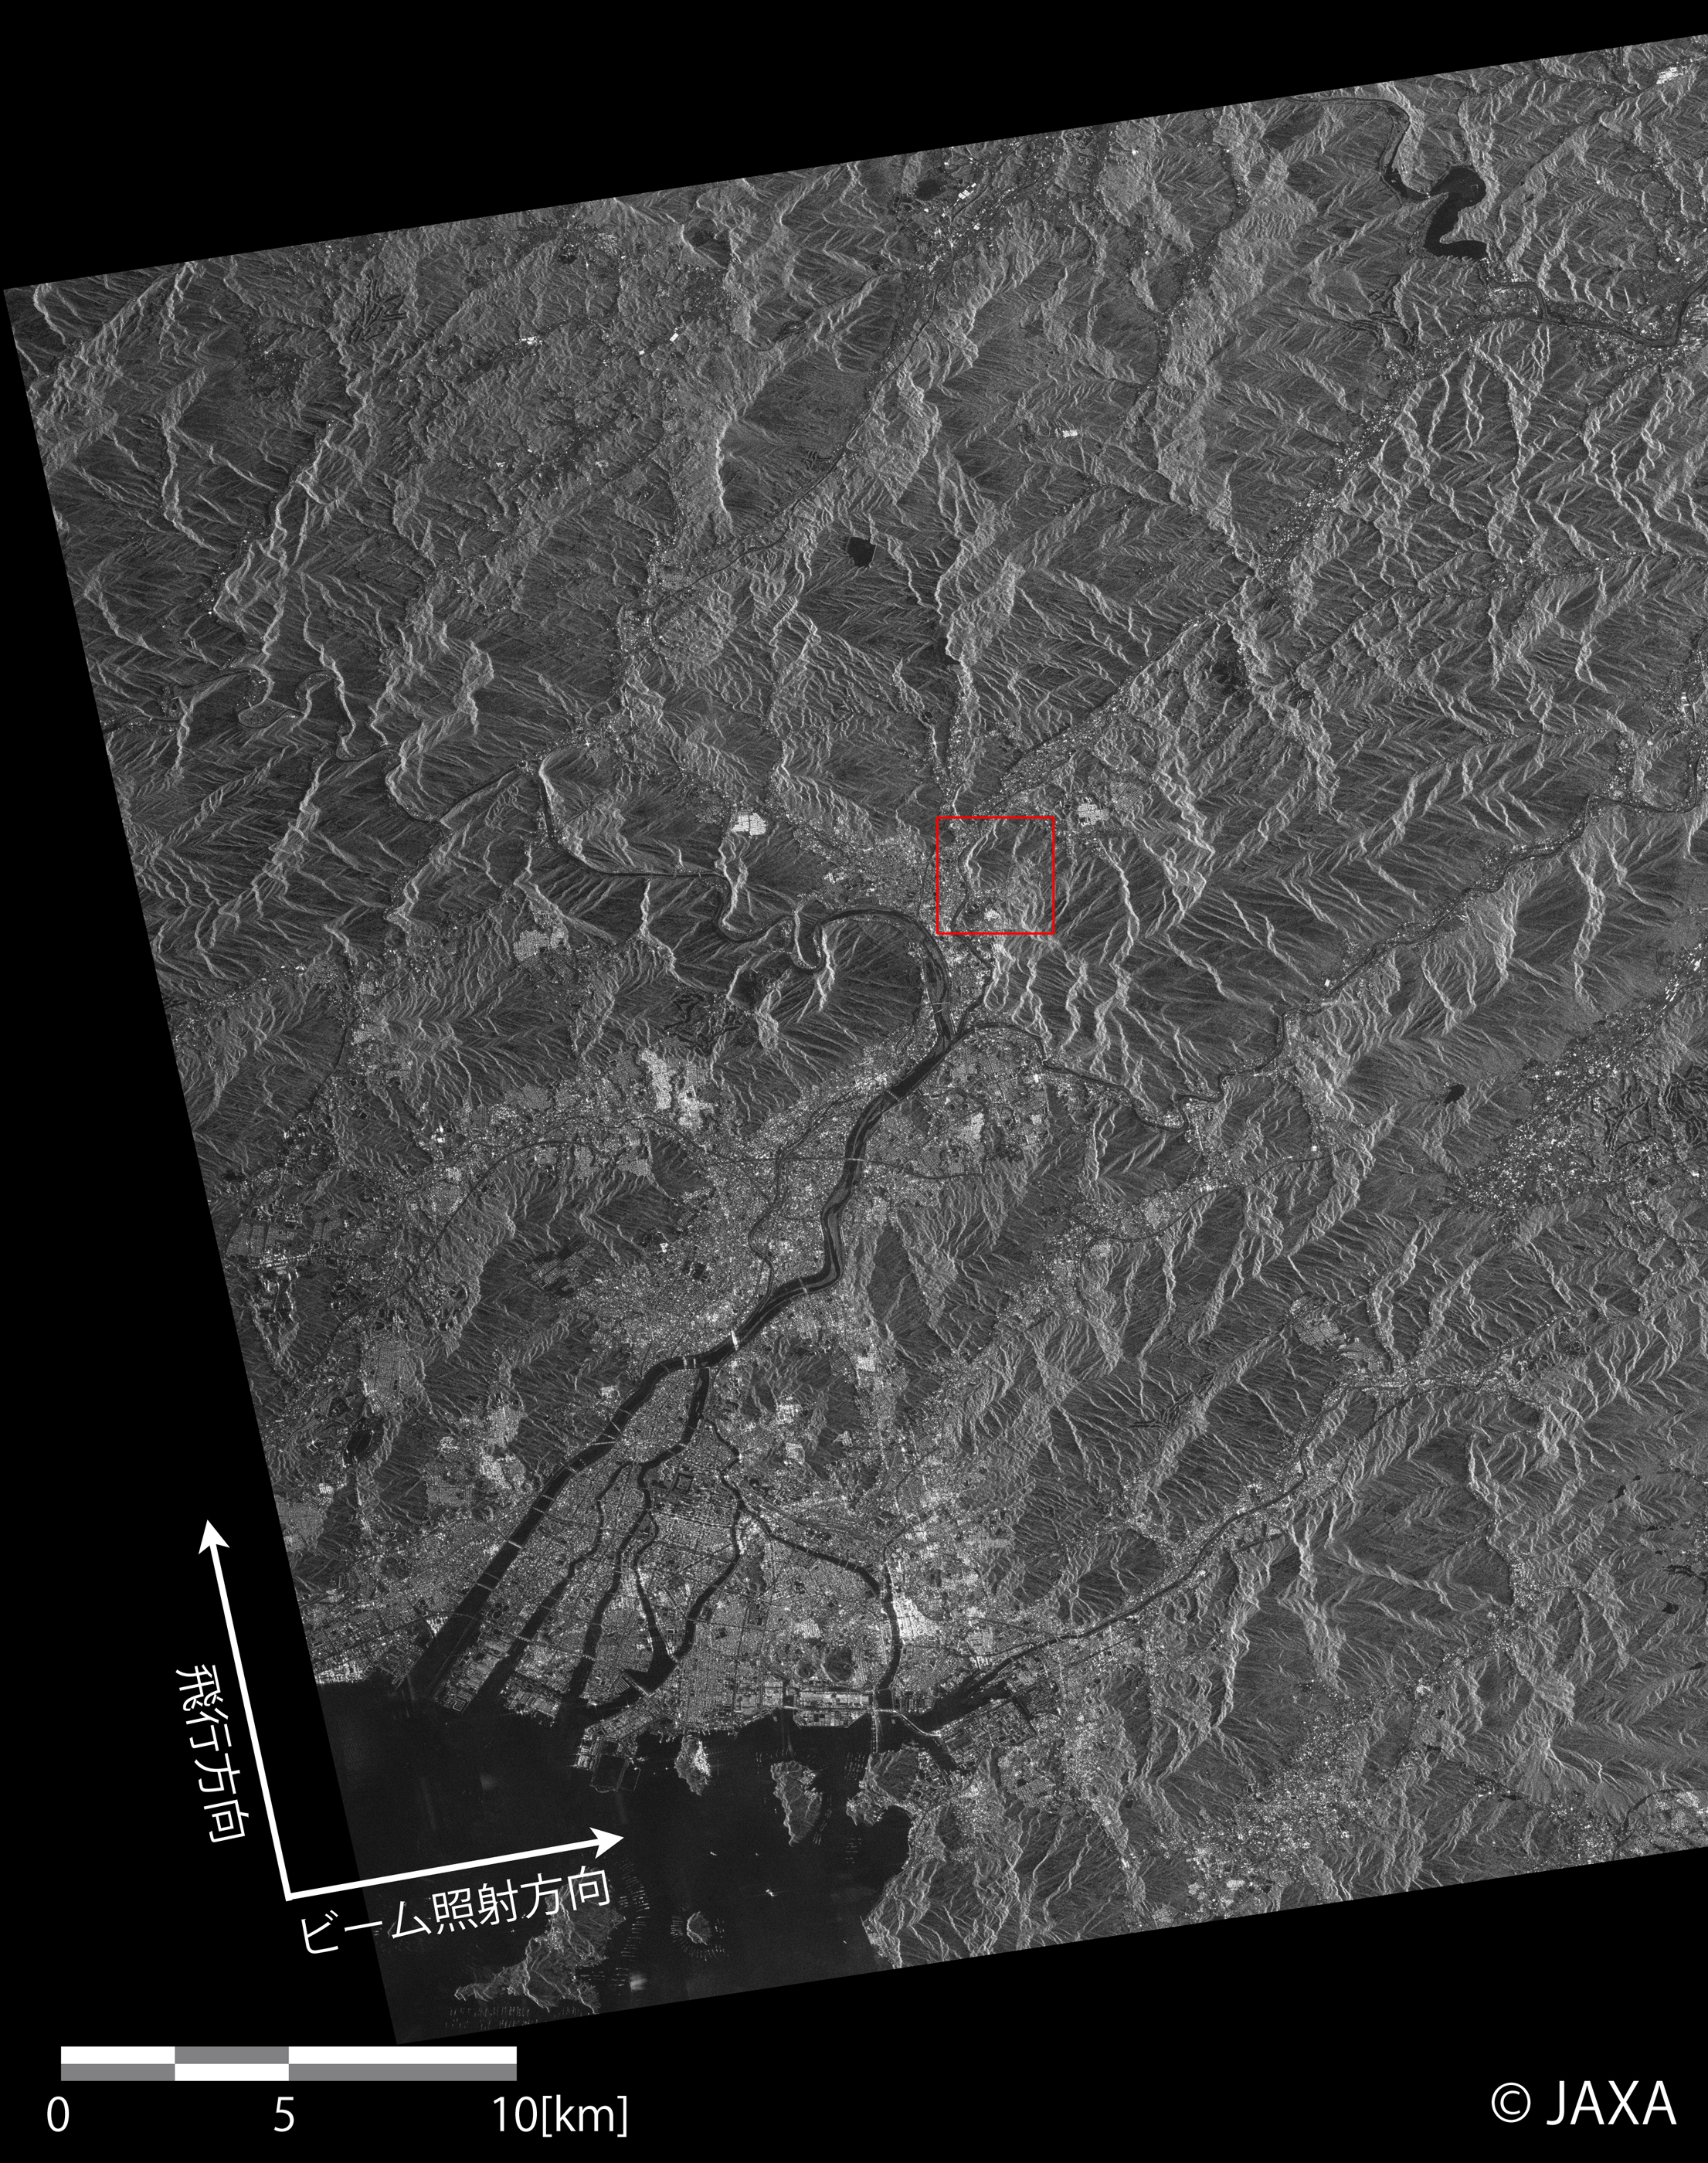 図2: 「だいち2号」搭載PALSAR-2高分解能[3m]モード (1偏波) 観測による広島市土砂災害発生地域の画像（2014年8月24日0時00分頃）